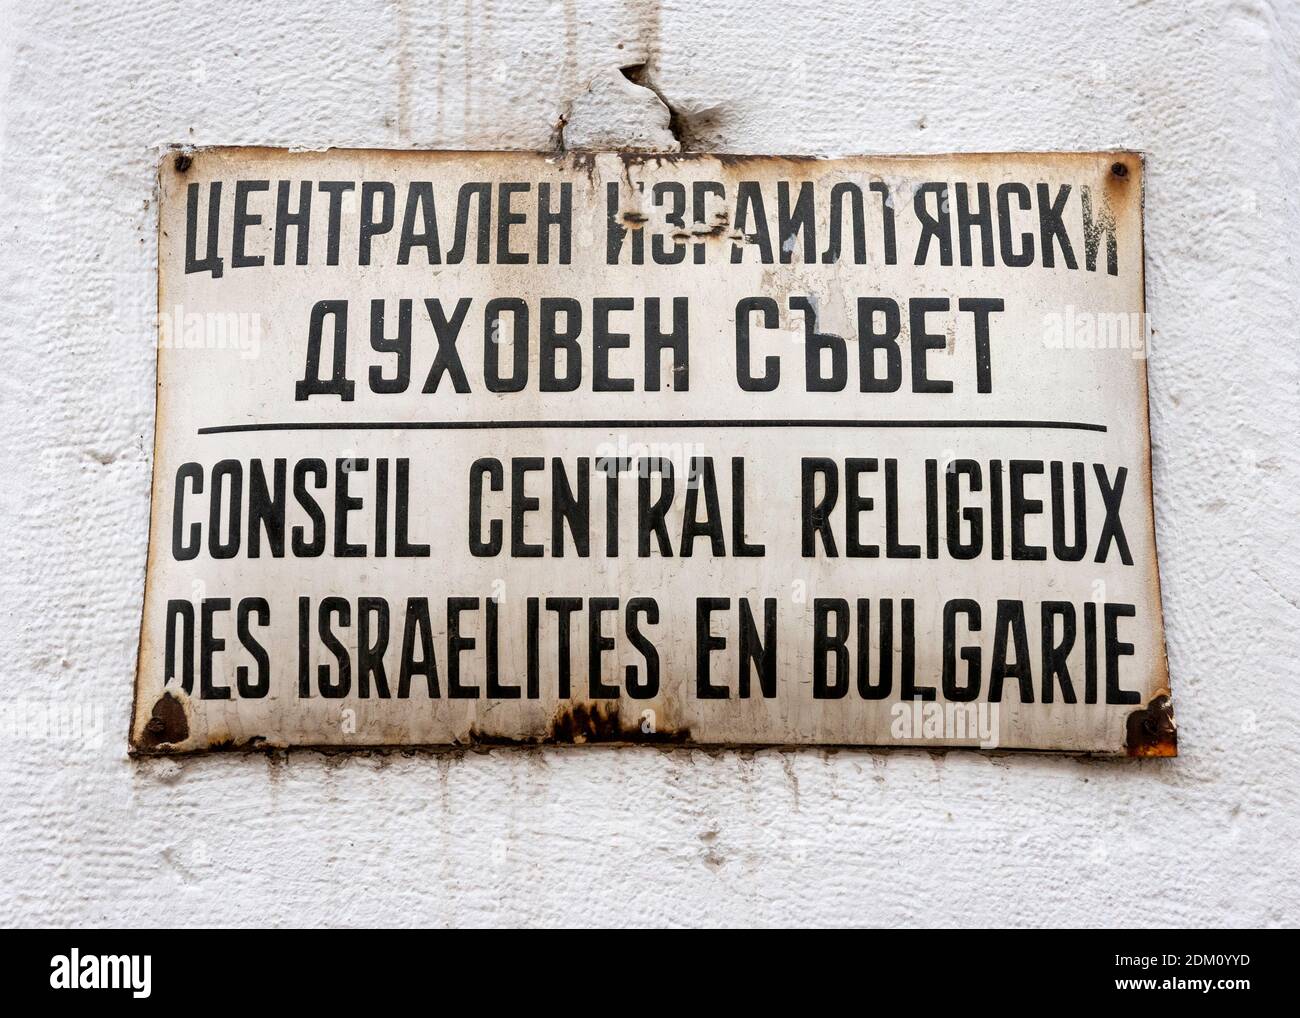 Vecchio segno obsoleto per il Consiglio religioso Ebraico Centrale di Bulgaria in lingua francese presso la Sinagoga o Shul in Sofia Bulgaria Europa orientale Foto Stock